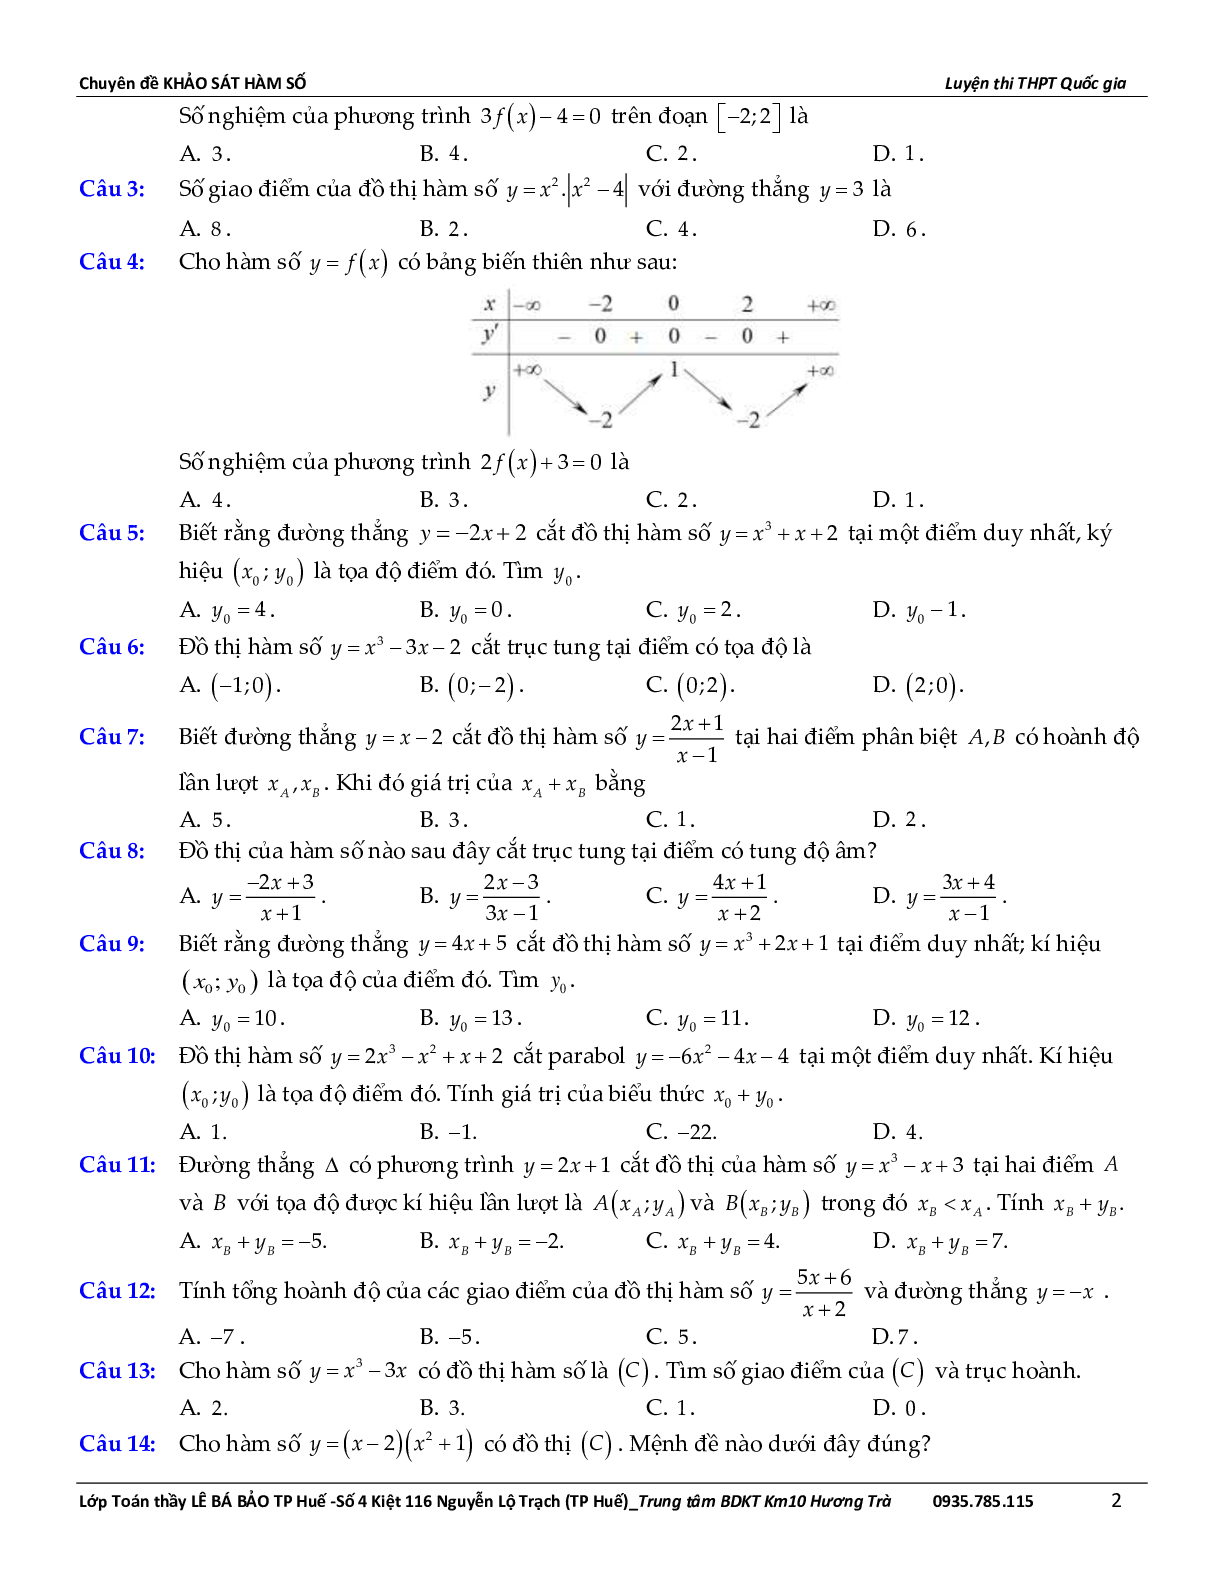 Bài toán về tương giao của đồ thị hàm số (trang 3)